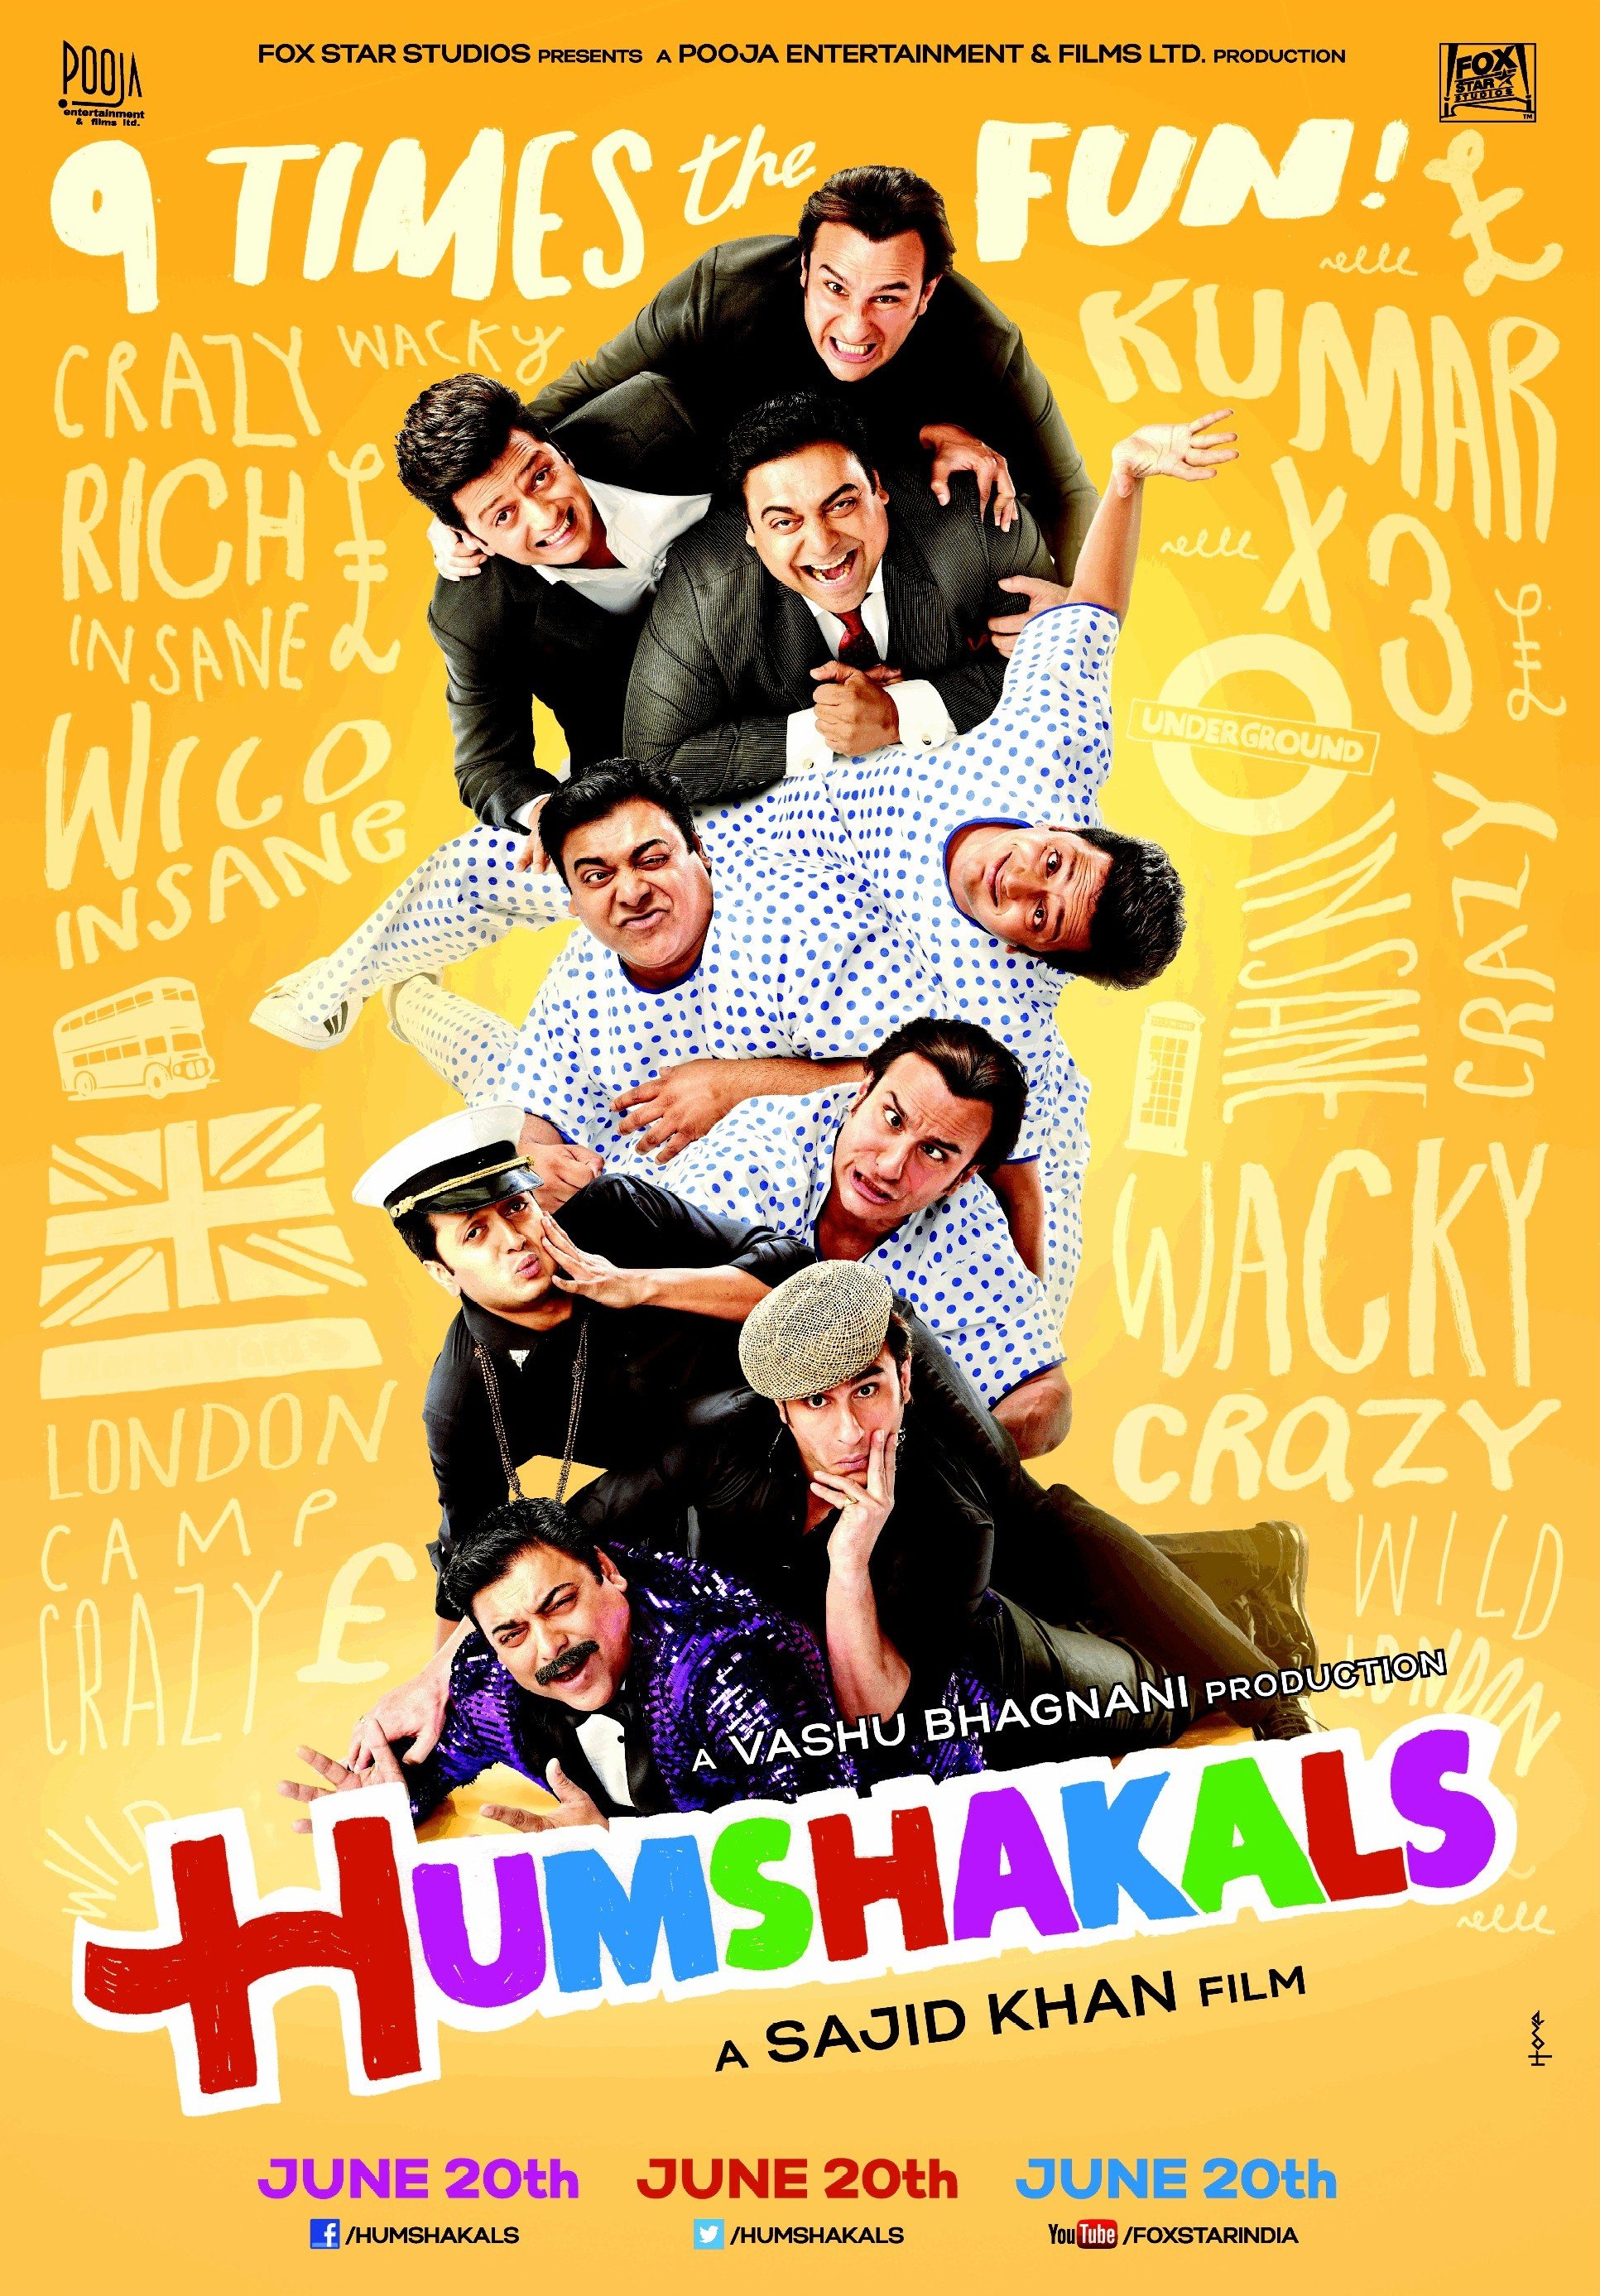 Hindi poster of the movie Humshakals